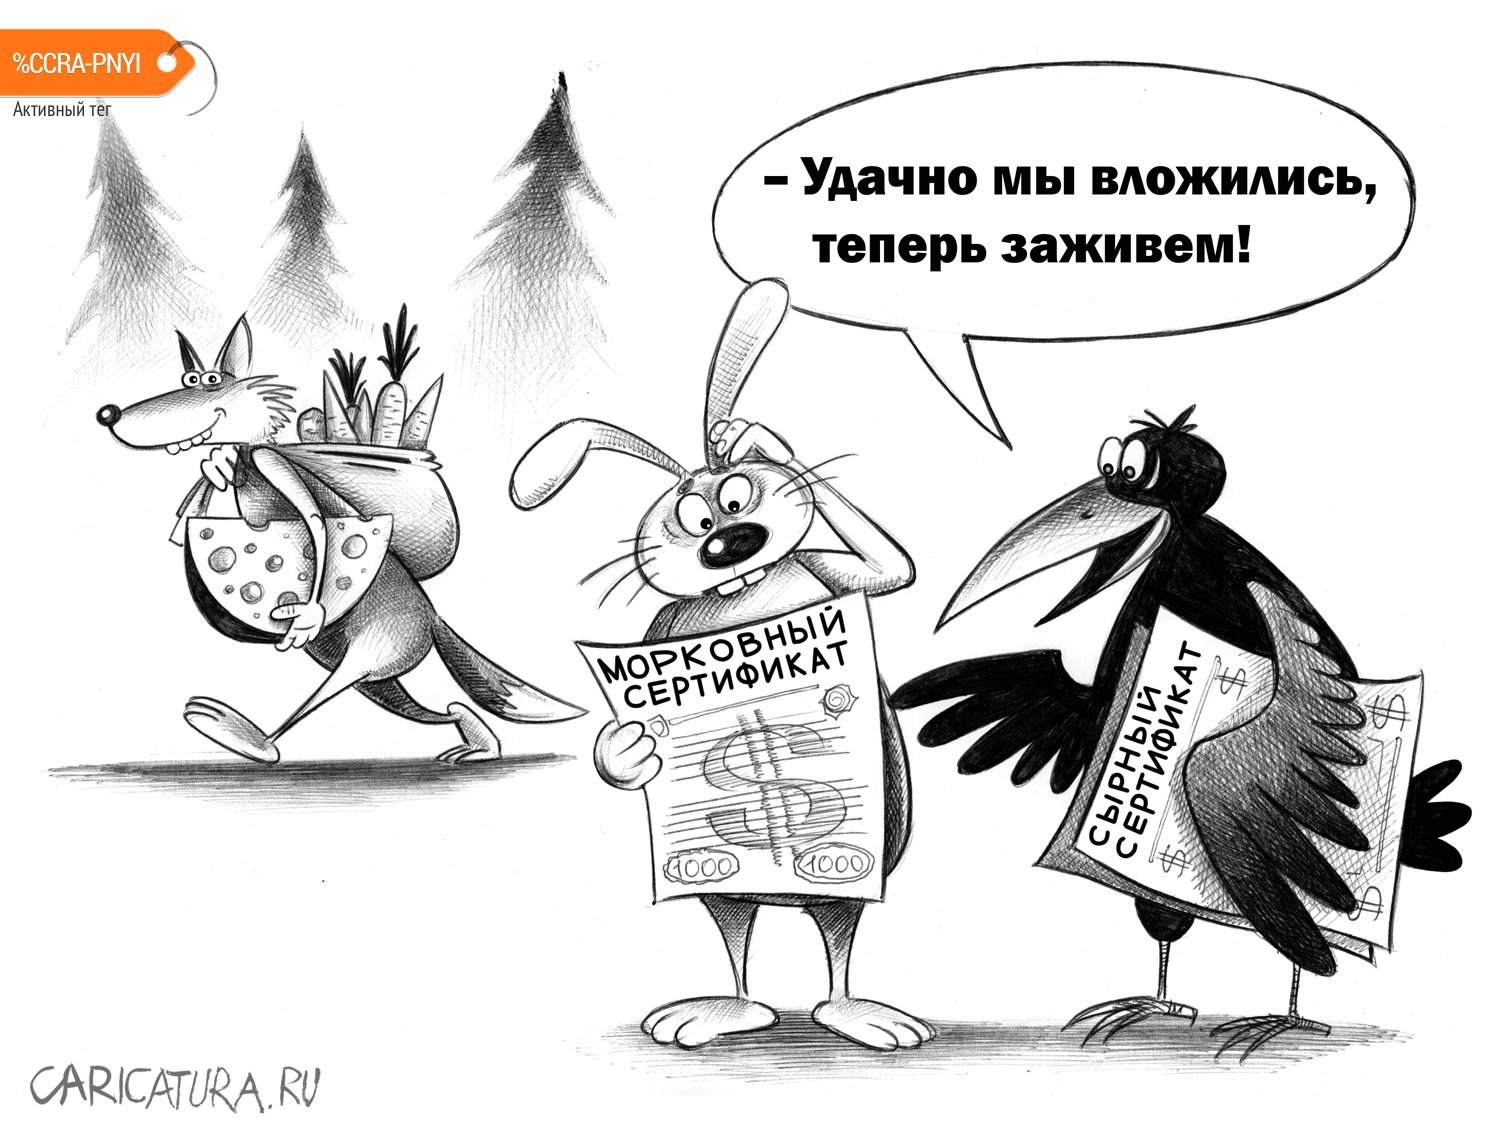 Карикатура "Вложение", Сергей Корсун